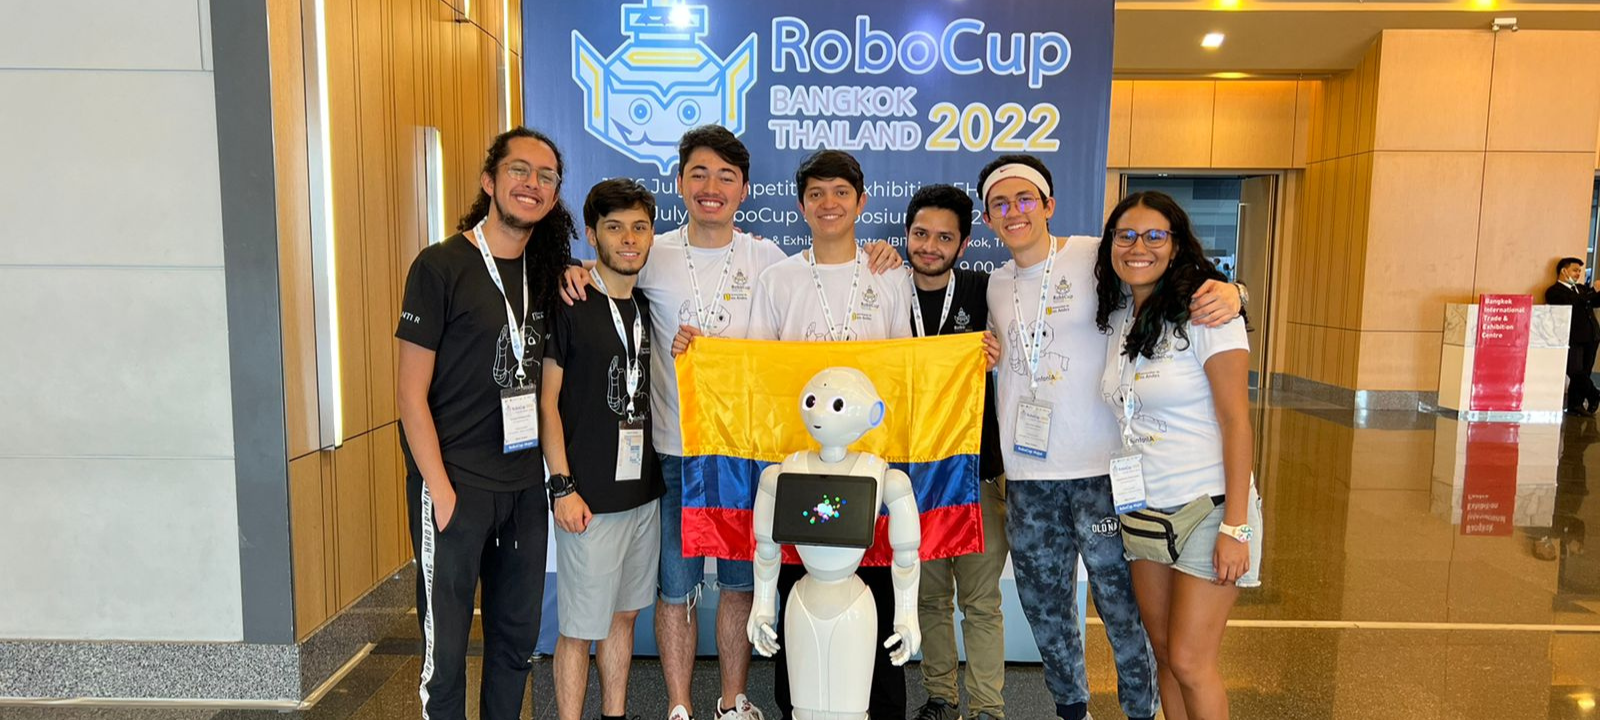 Los ingenieros uniandinos consiguen el segundo puesto en el Mundial de Robótica RoboCup 2022 